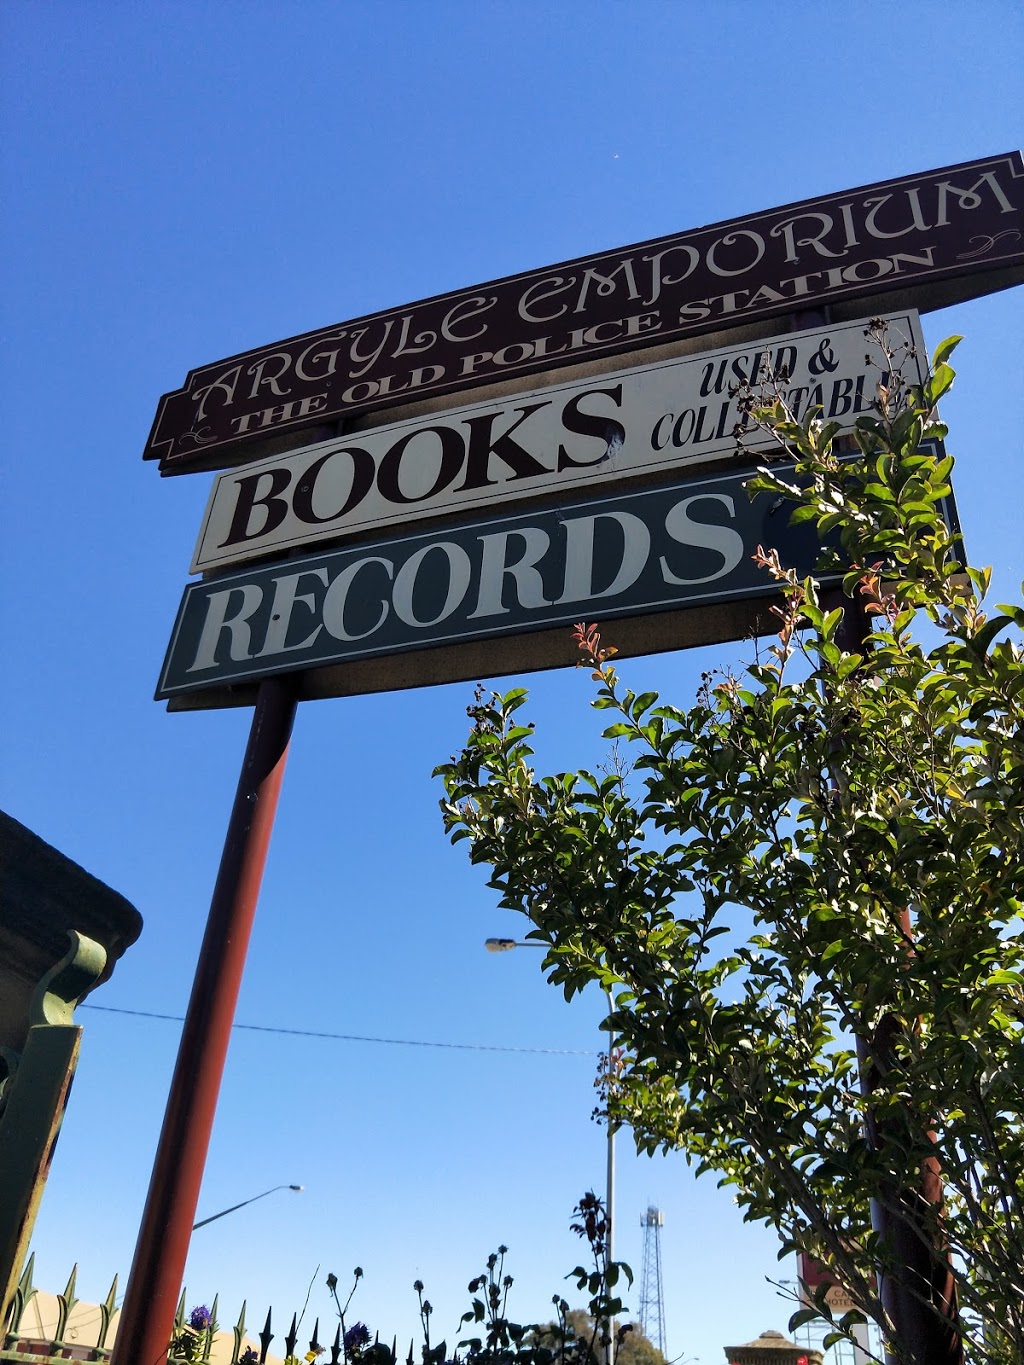 Argyle Emporium | book store | 260 Sloane St, Goulburn NSW 2580, Australia | 0248210876 OR +61 2 4821 0876